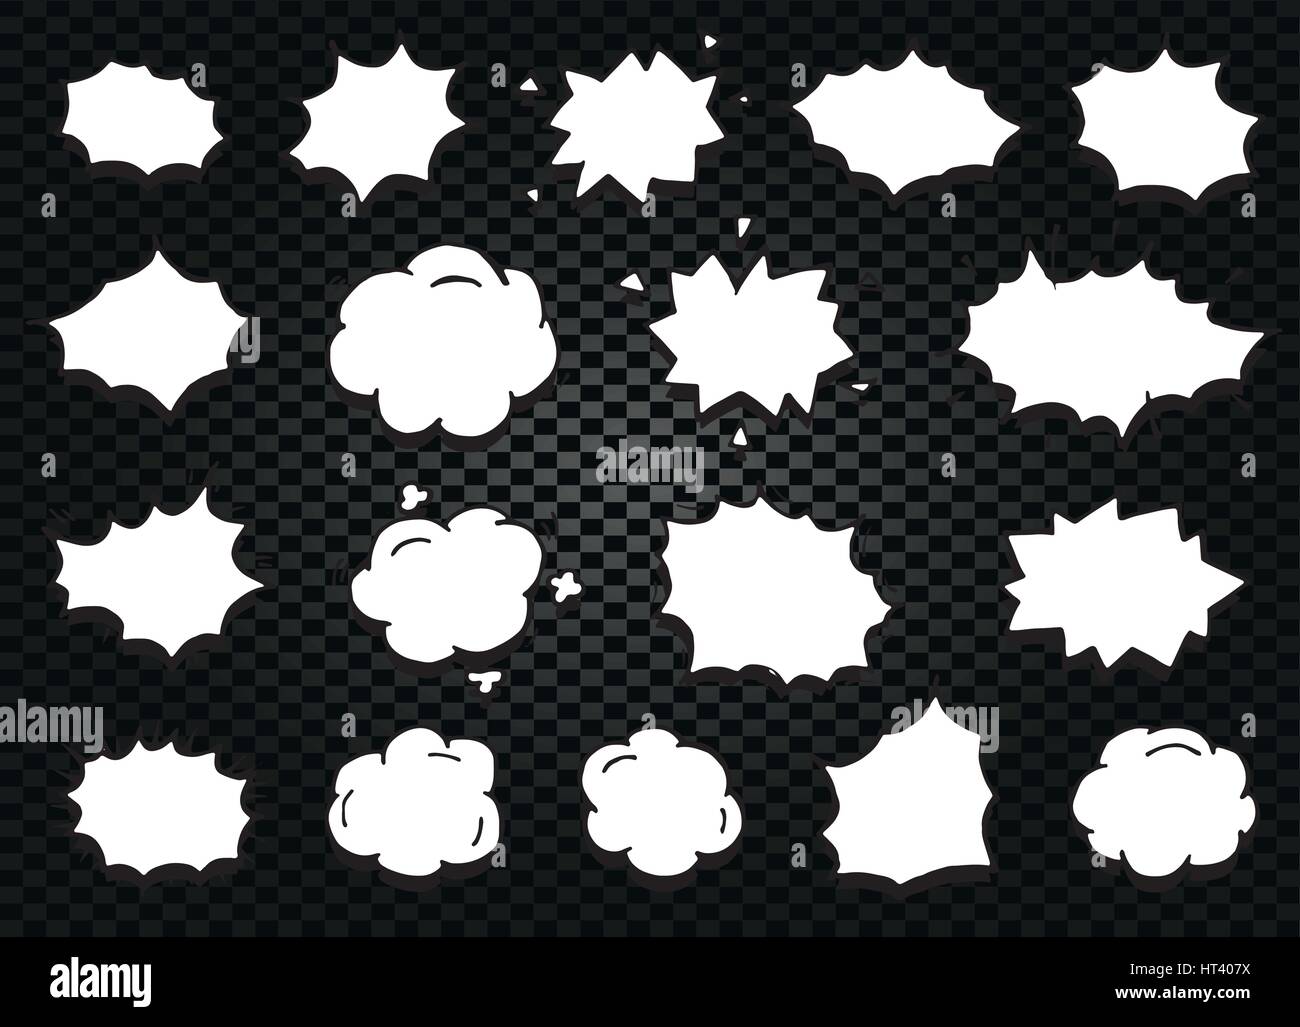 Abstract isolato in bianco e nero e a colori bianco fumetto discorso palloncini raccolta di icone su sfondo a scacchi, le finestre di dialogo di set di segni,telai di finestra di dialogo illustrazione vettoriale Illustrazione Vettoriale